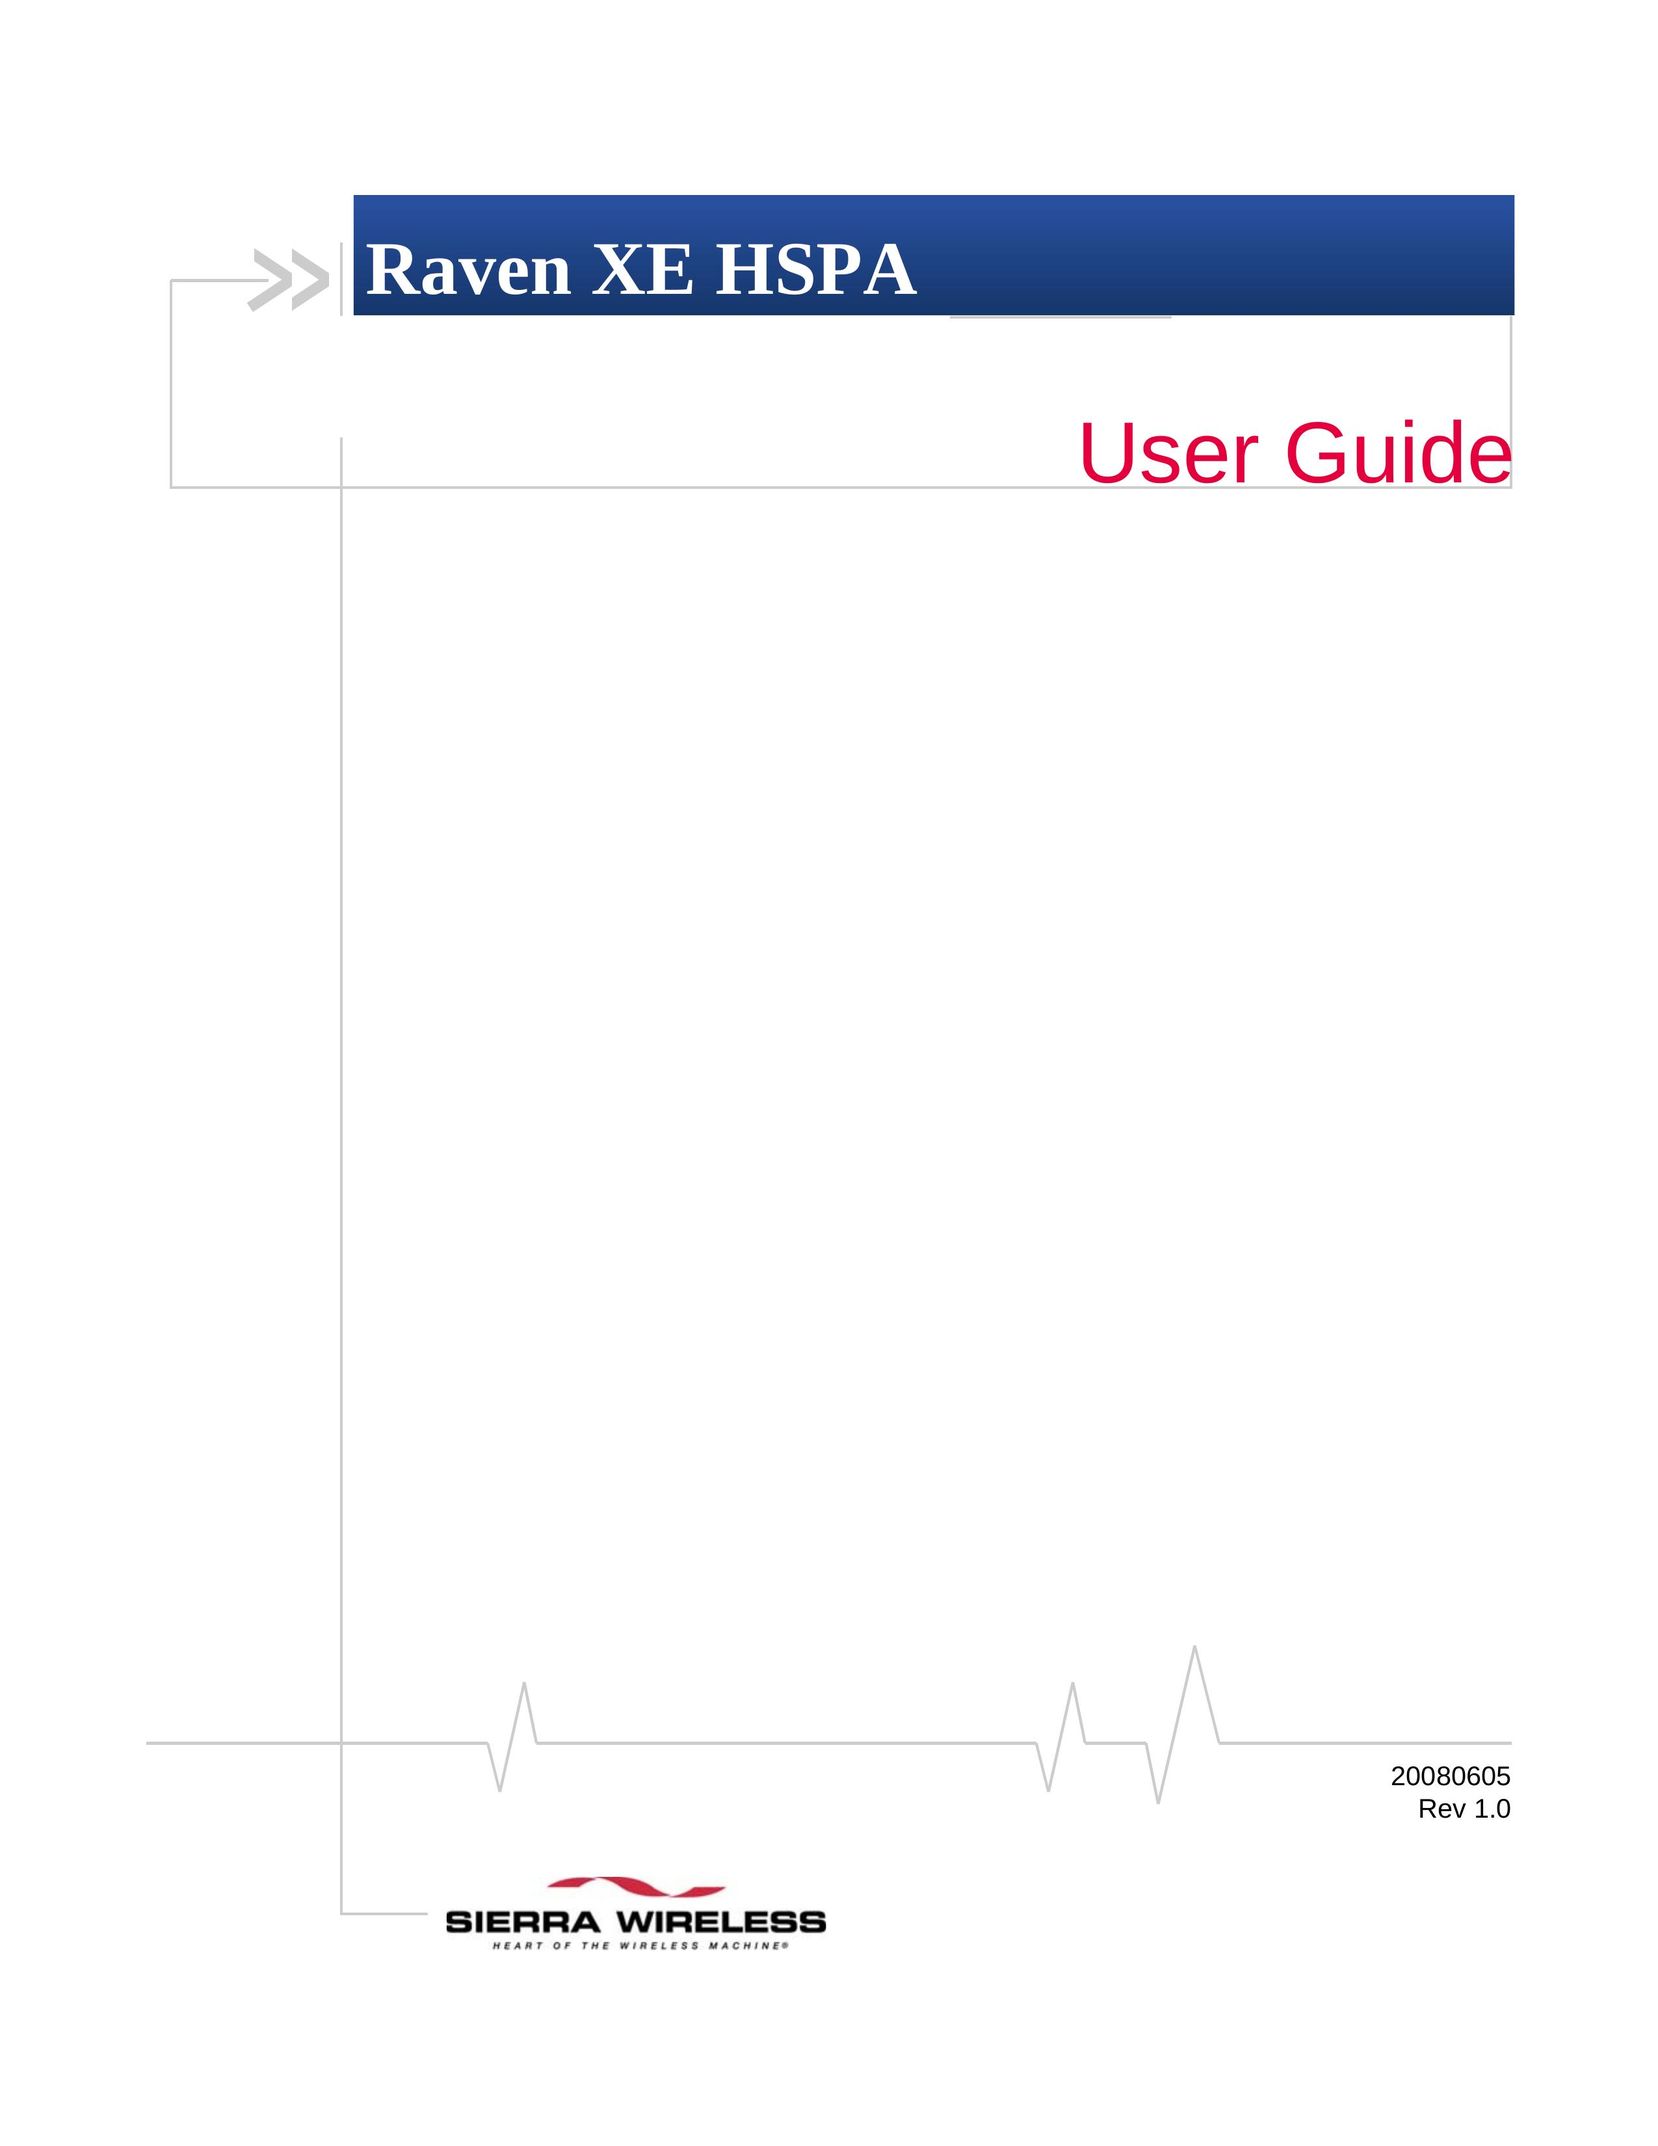 Sierra Wireless 20080605 Network Router User Manual